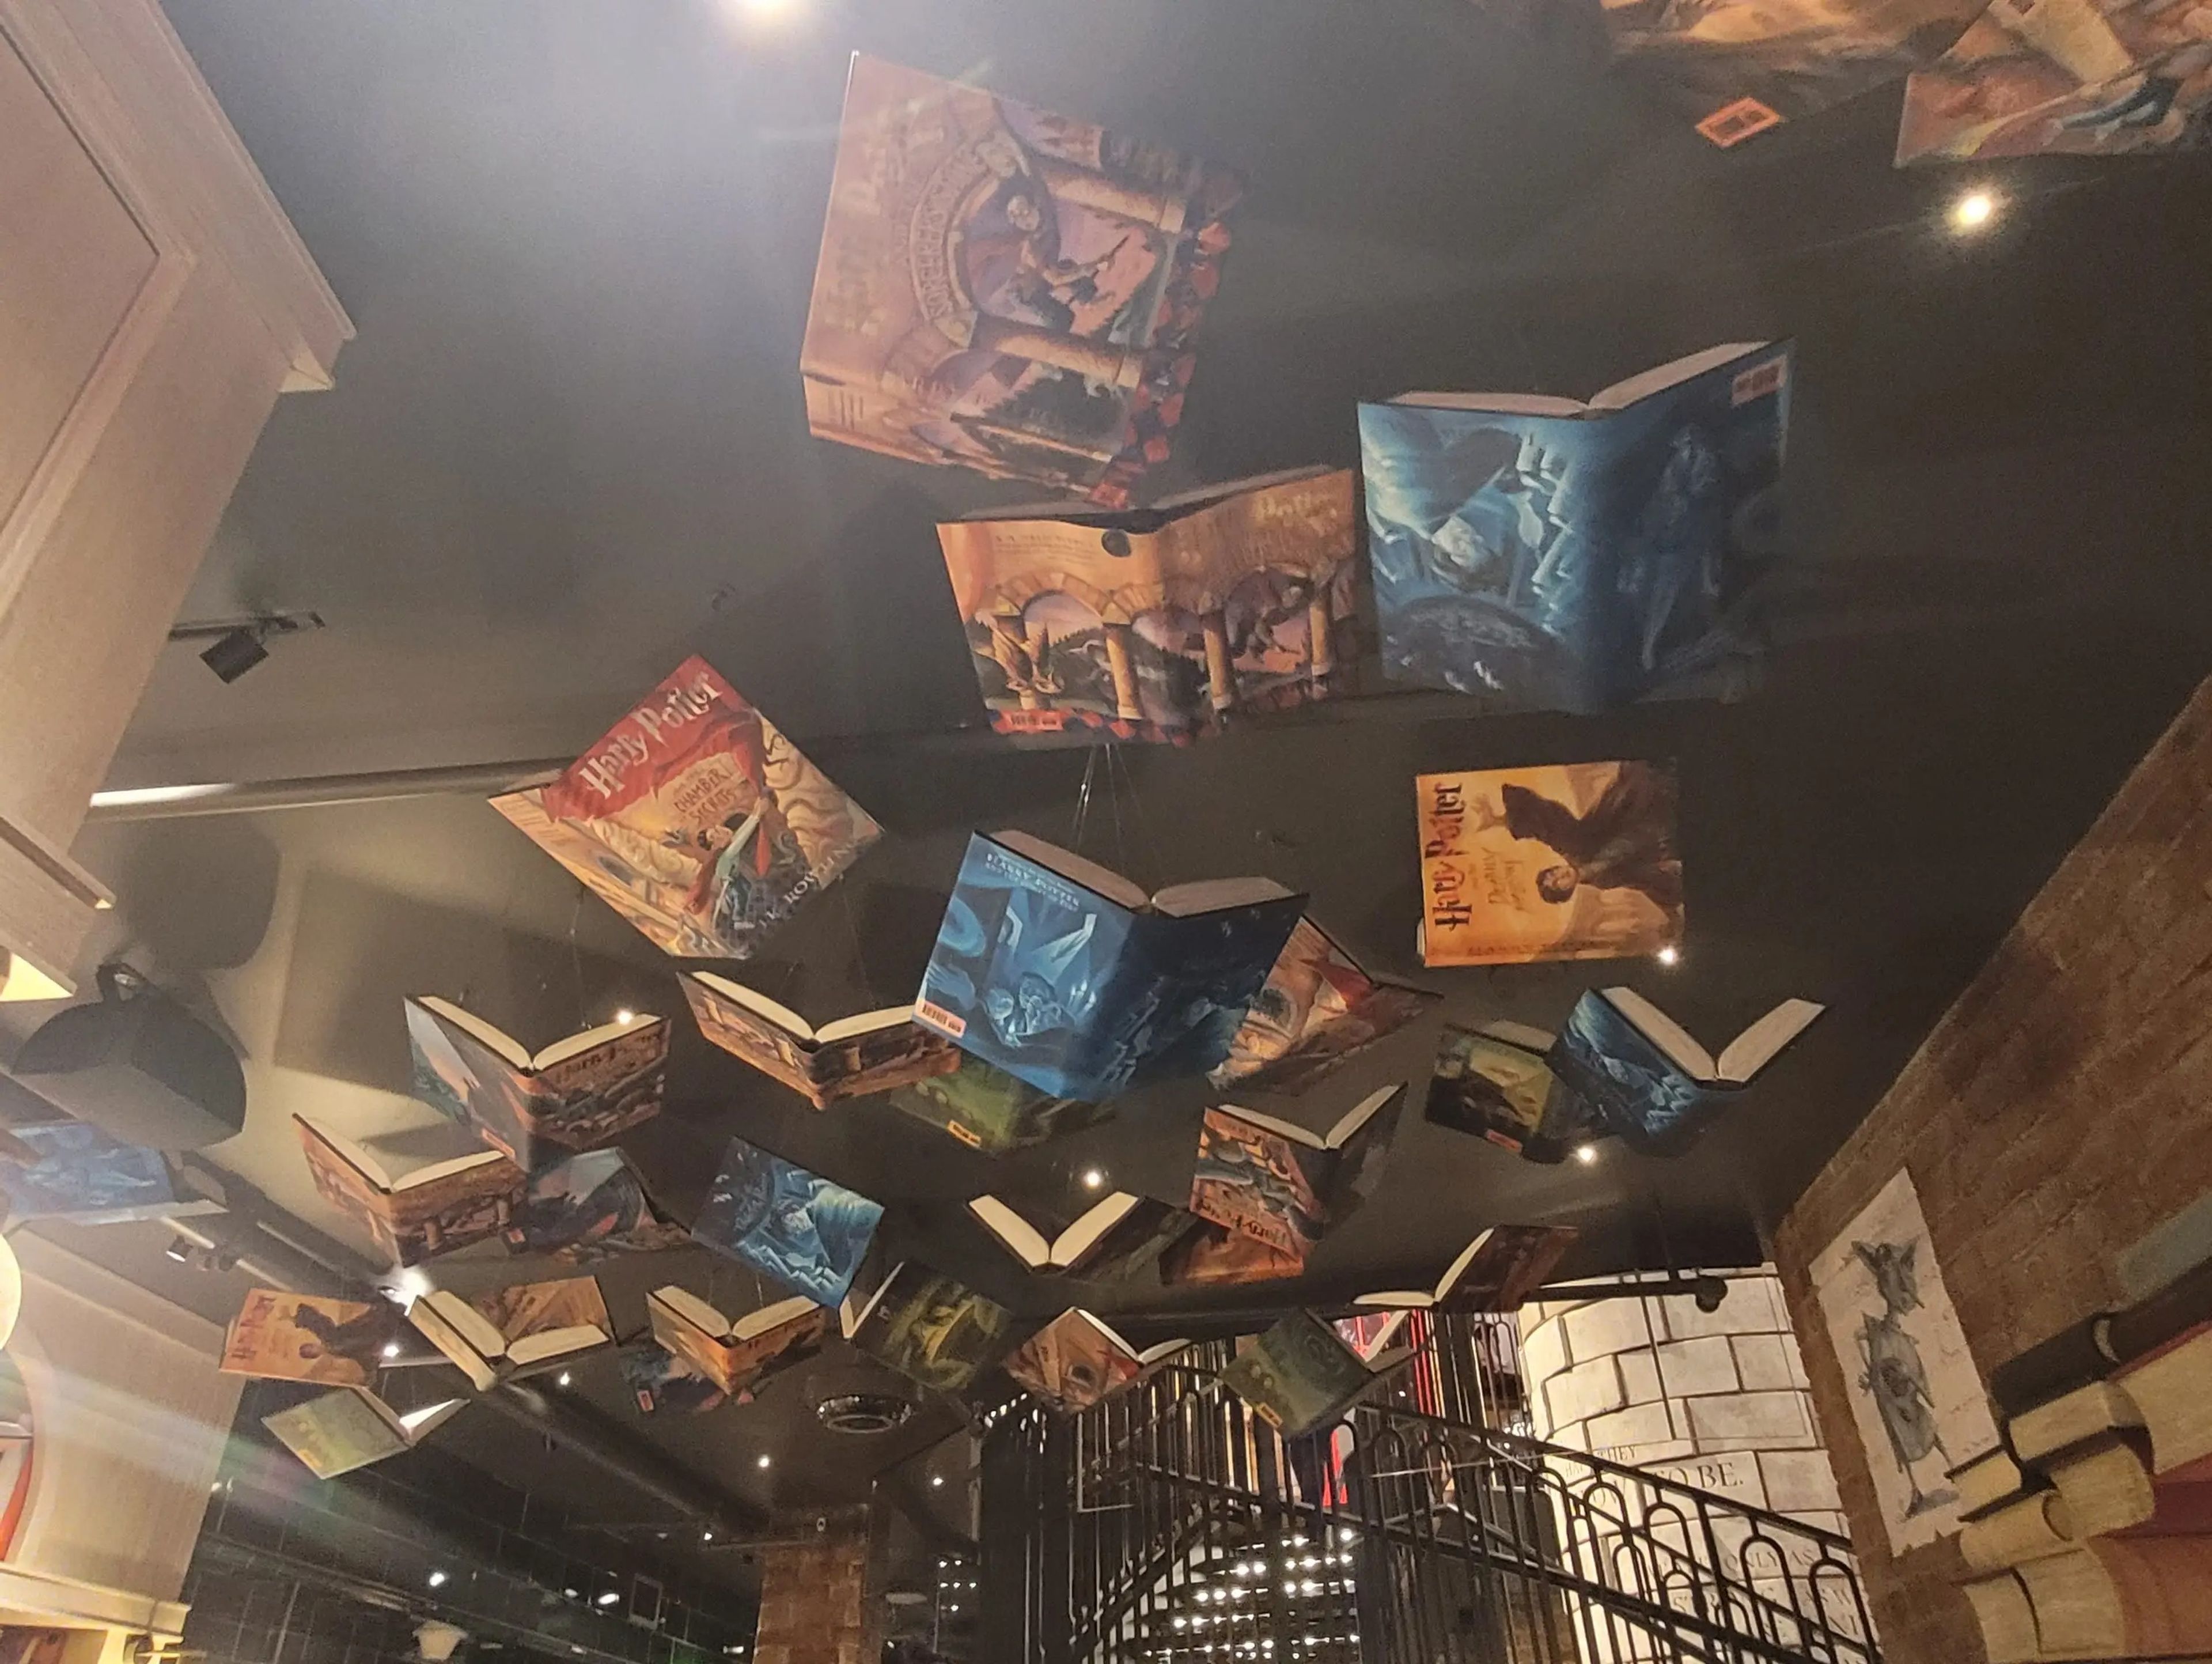 Había copias de todos los ejemplares de 'Harry Potter' colgadas del techo.